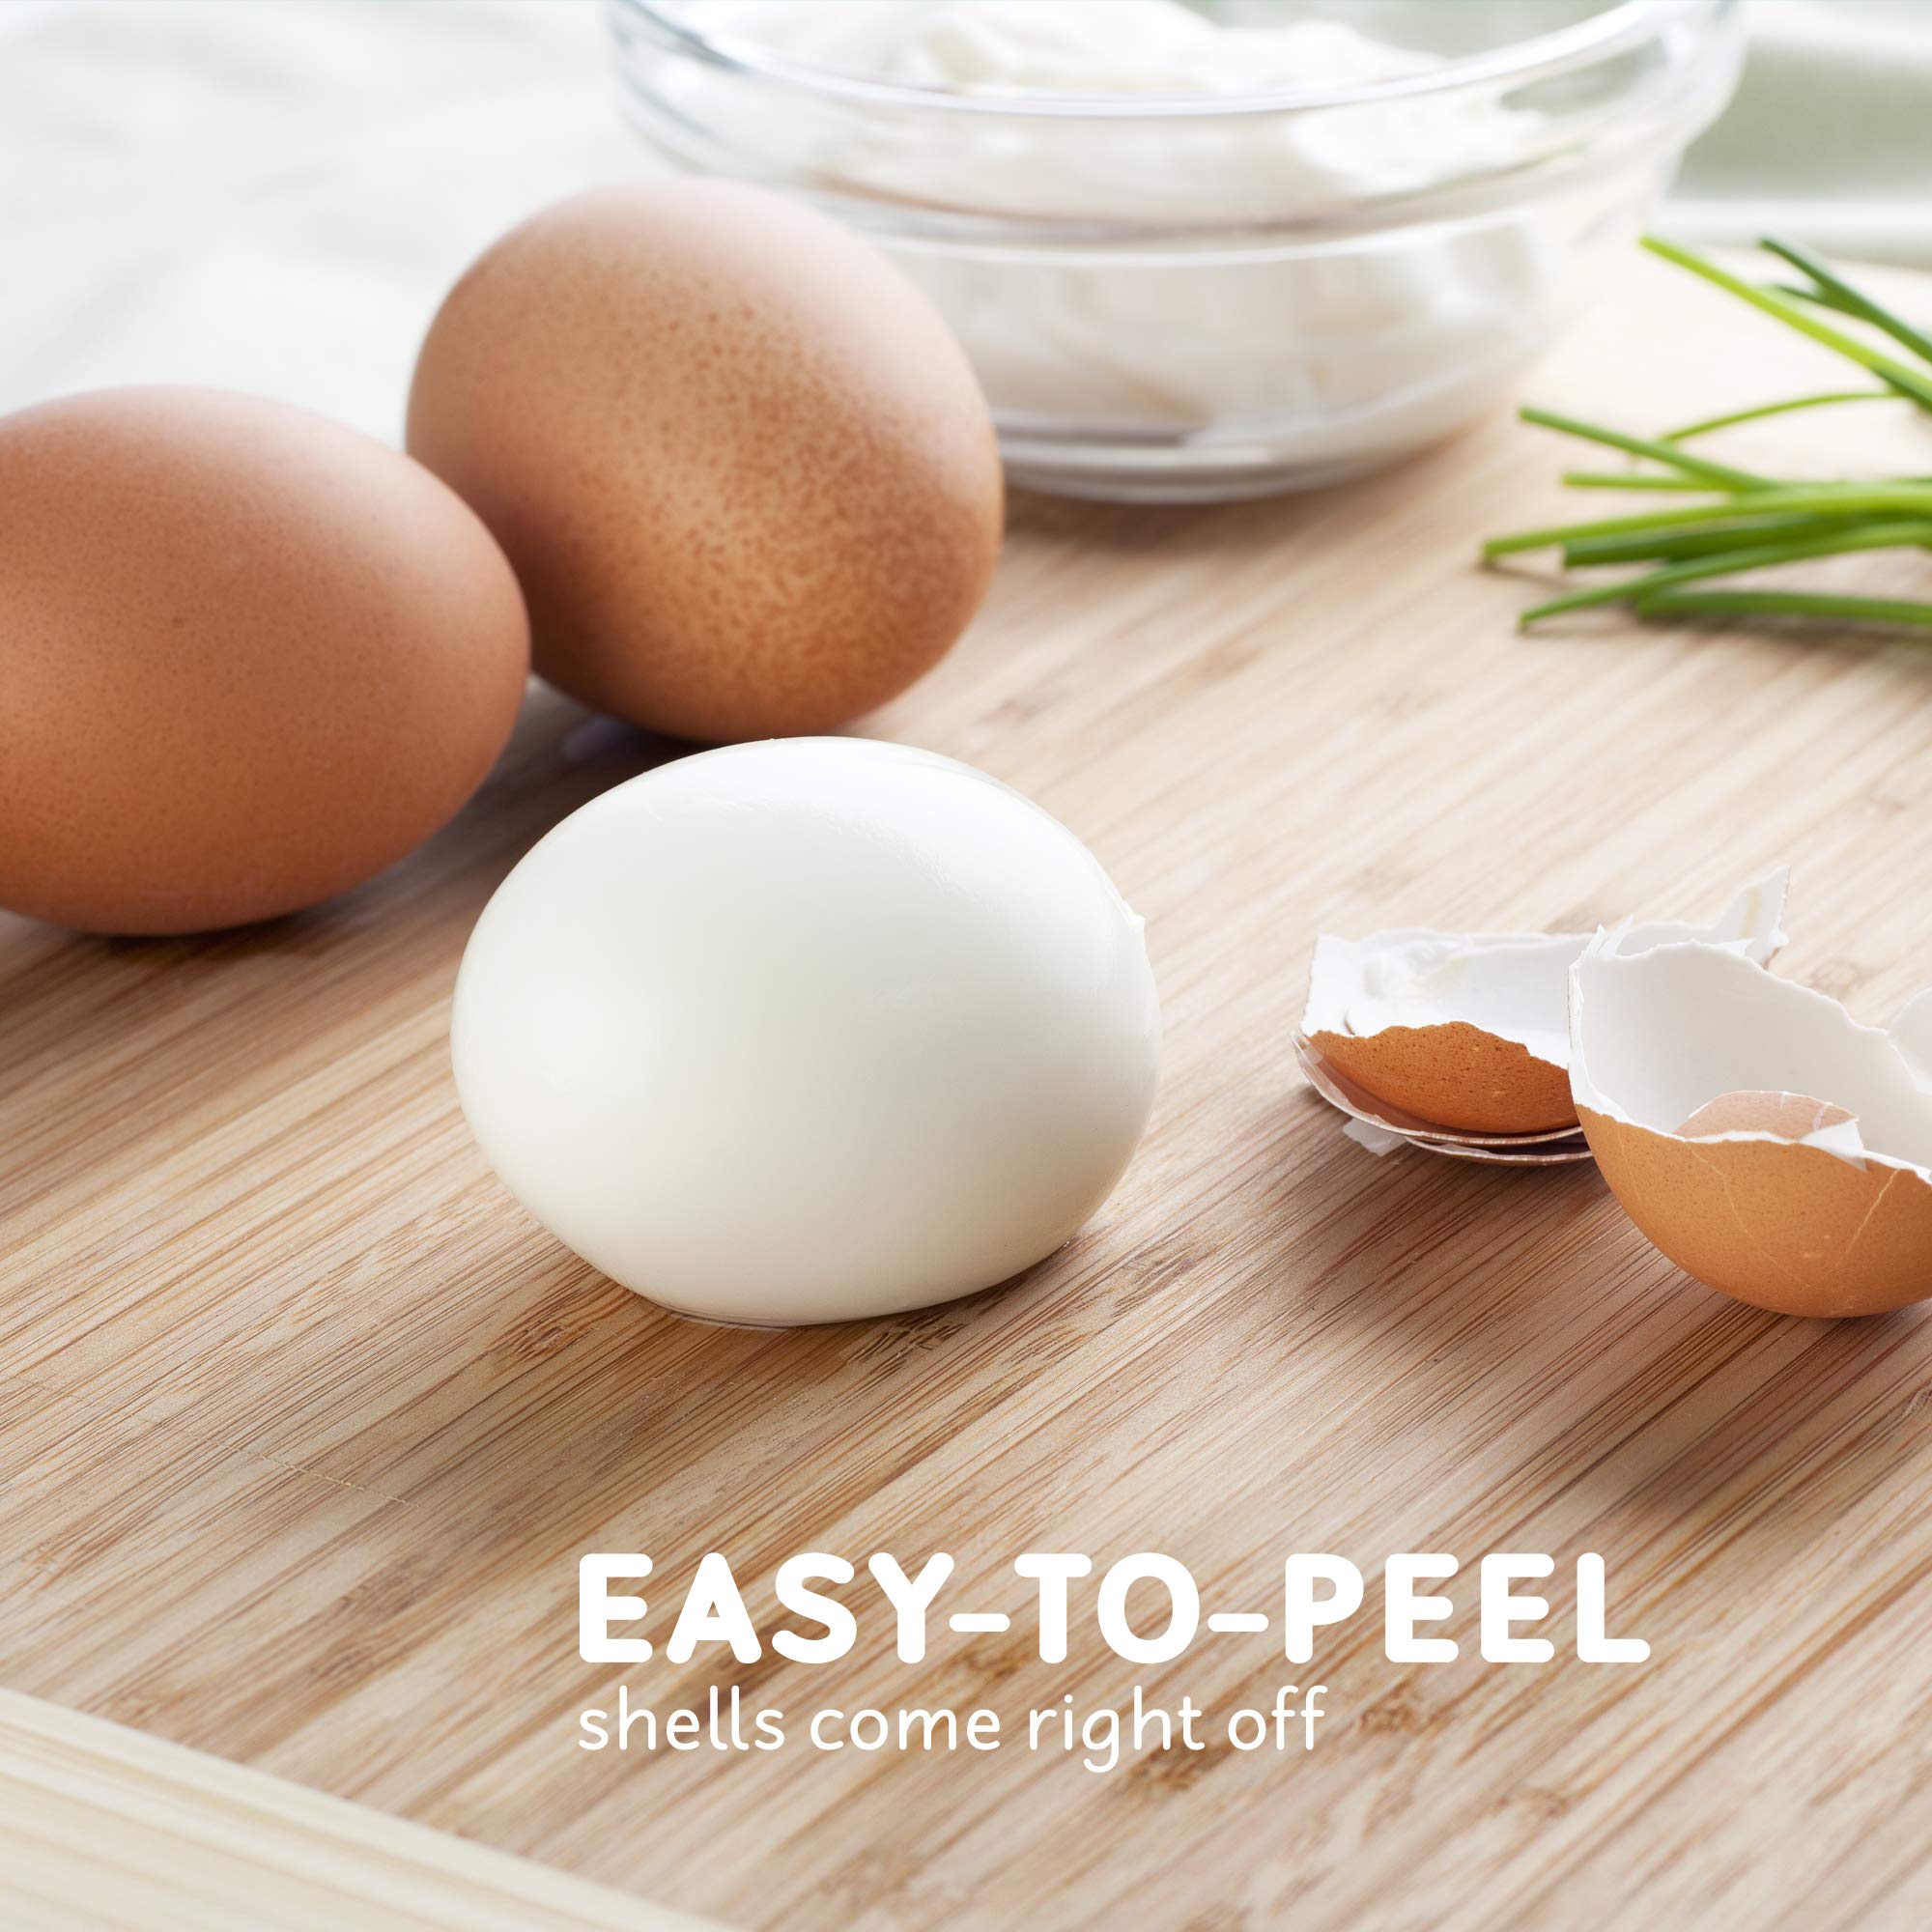 Elite Gourmet EGC-007Y# Rapid Egg Cooker, 7 Easy-To-Peel, Hard, Medium, Soft Boiled Eggs, Poacher, Omelet Maker, Auto Shut-Off, Alarm, 16-Recipe Booklet, Yellow